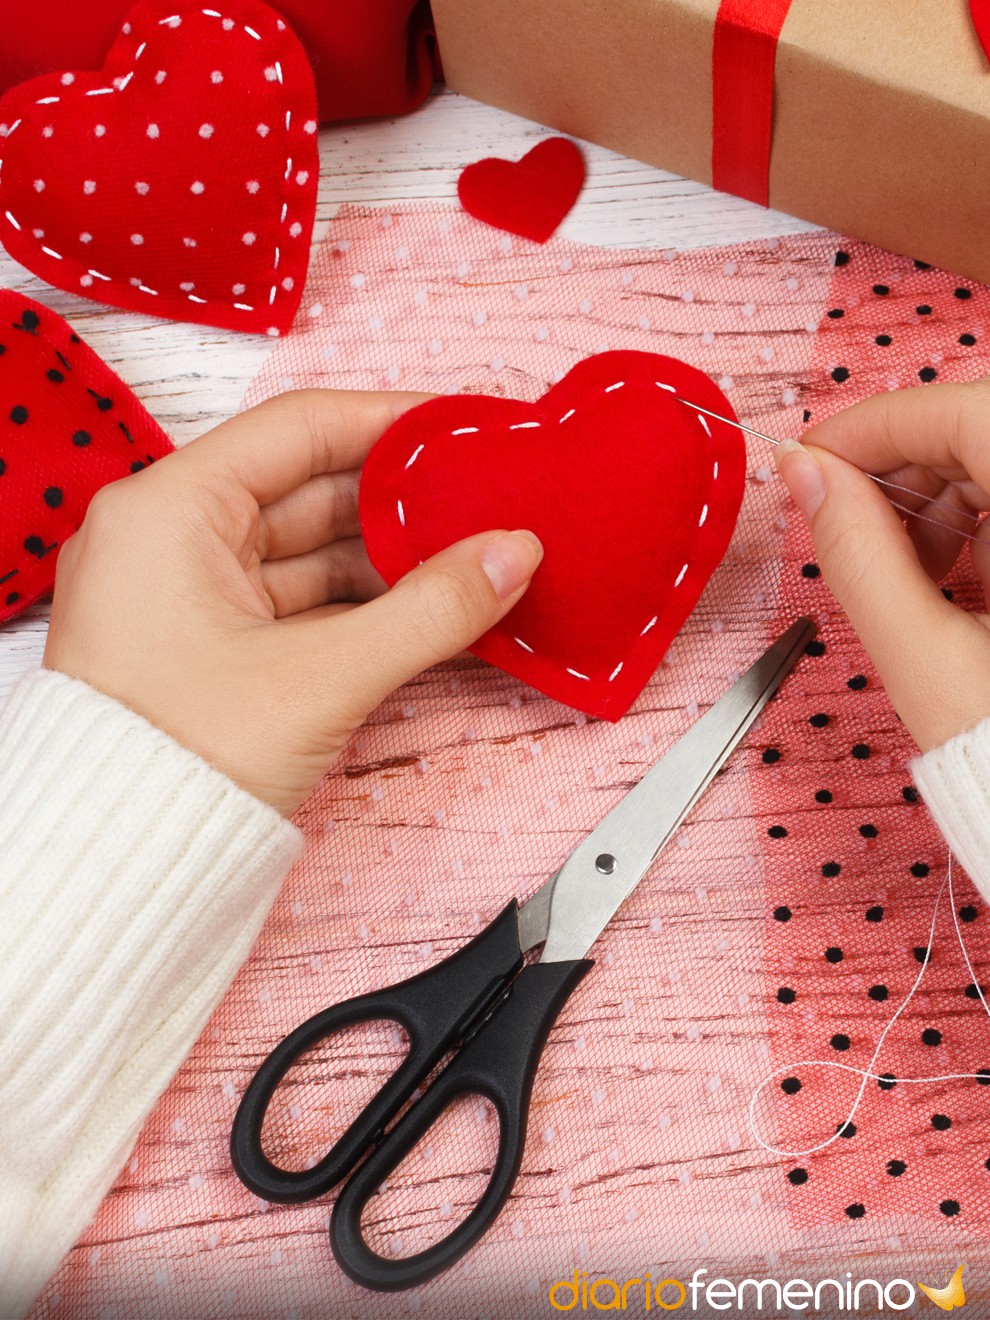 8 ideas de adornos para San Valentín: decoración fácil y MUY especial